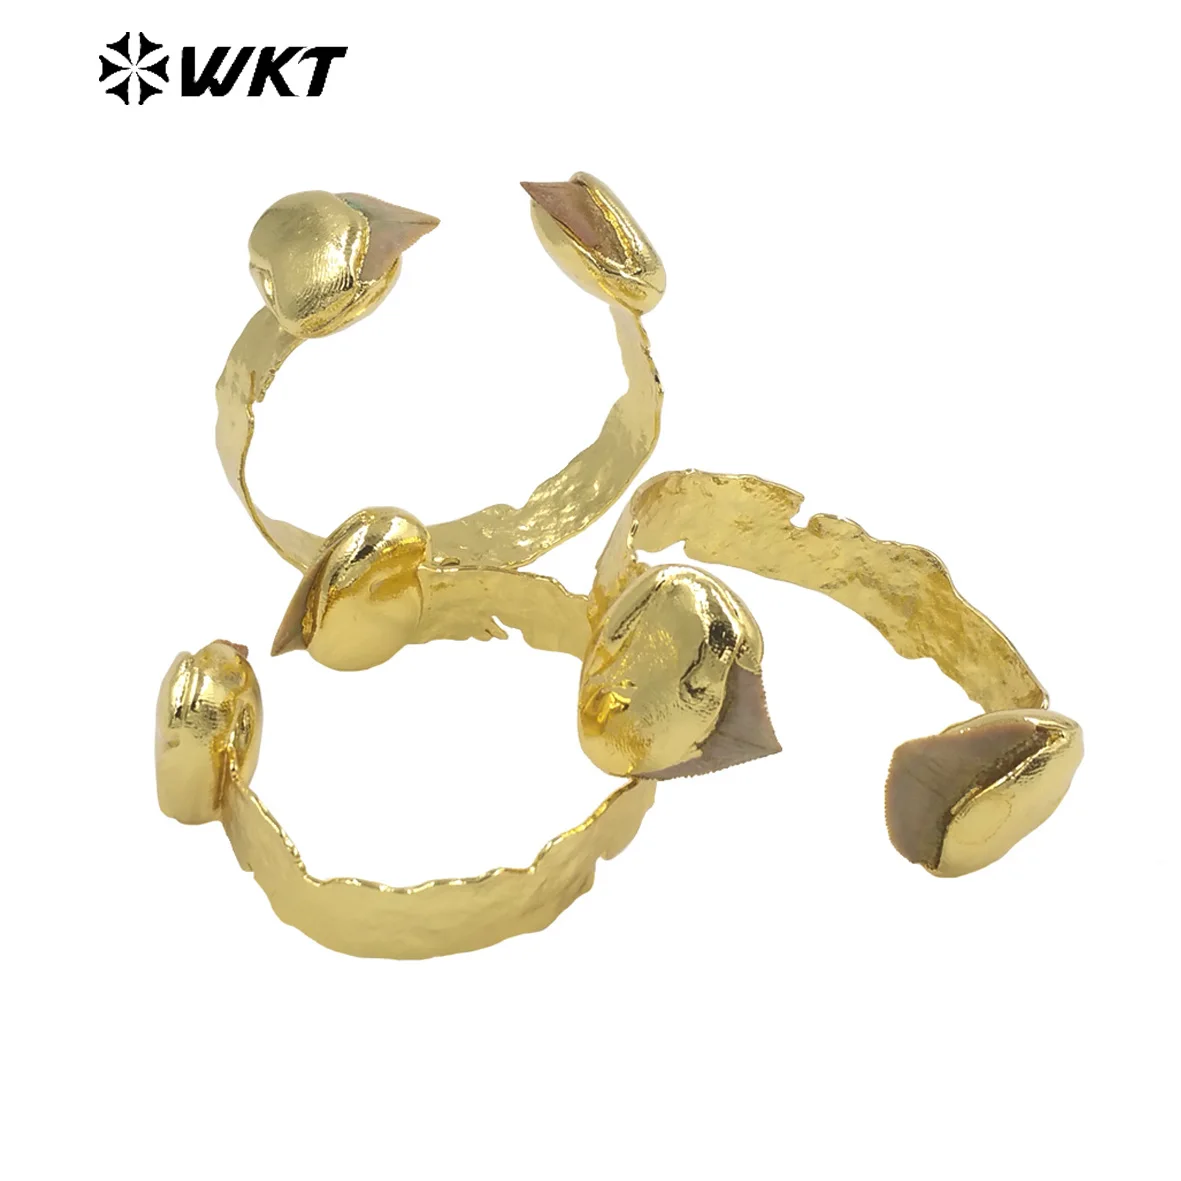 WT-B635 Удивительный WKT Эксклюзивный образец зубного браслета 18k с покрытием из настоящего золота INS, женский браслет в модном стиле, регулируемый Изображение 2